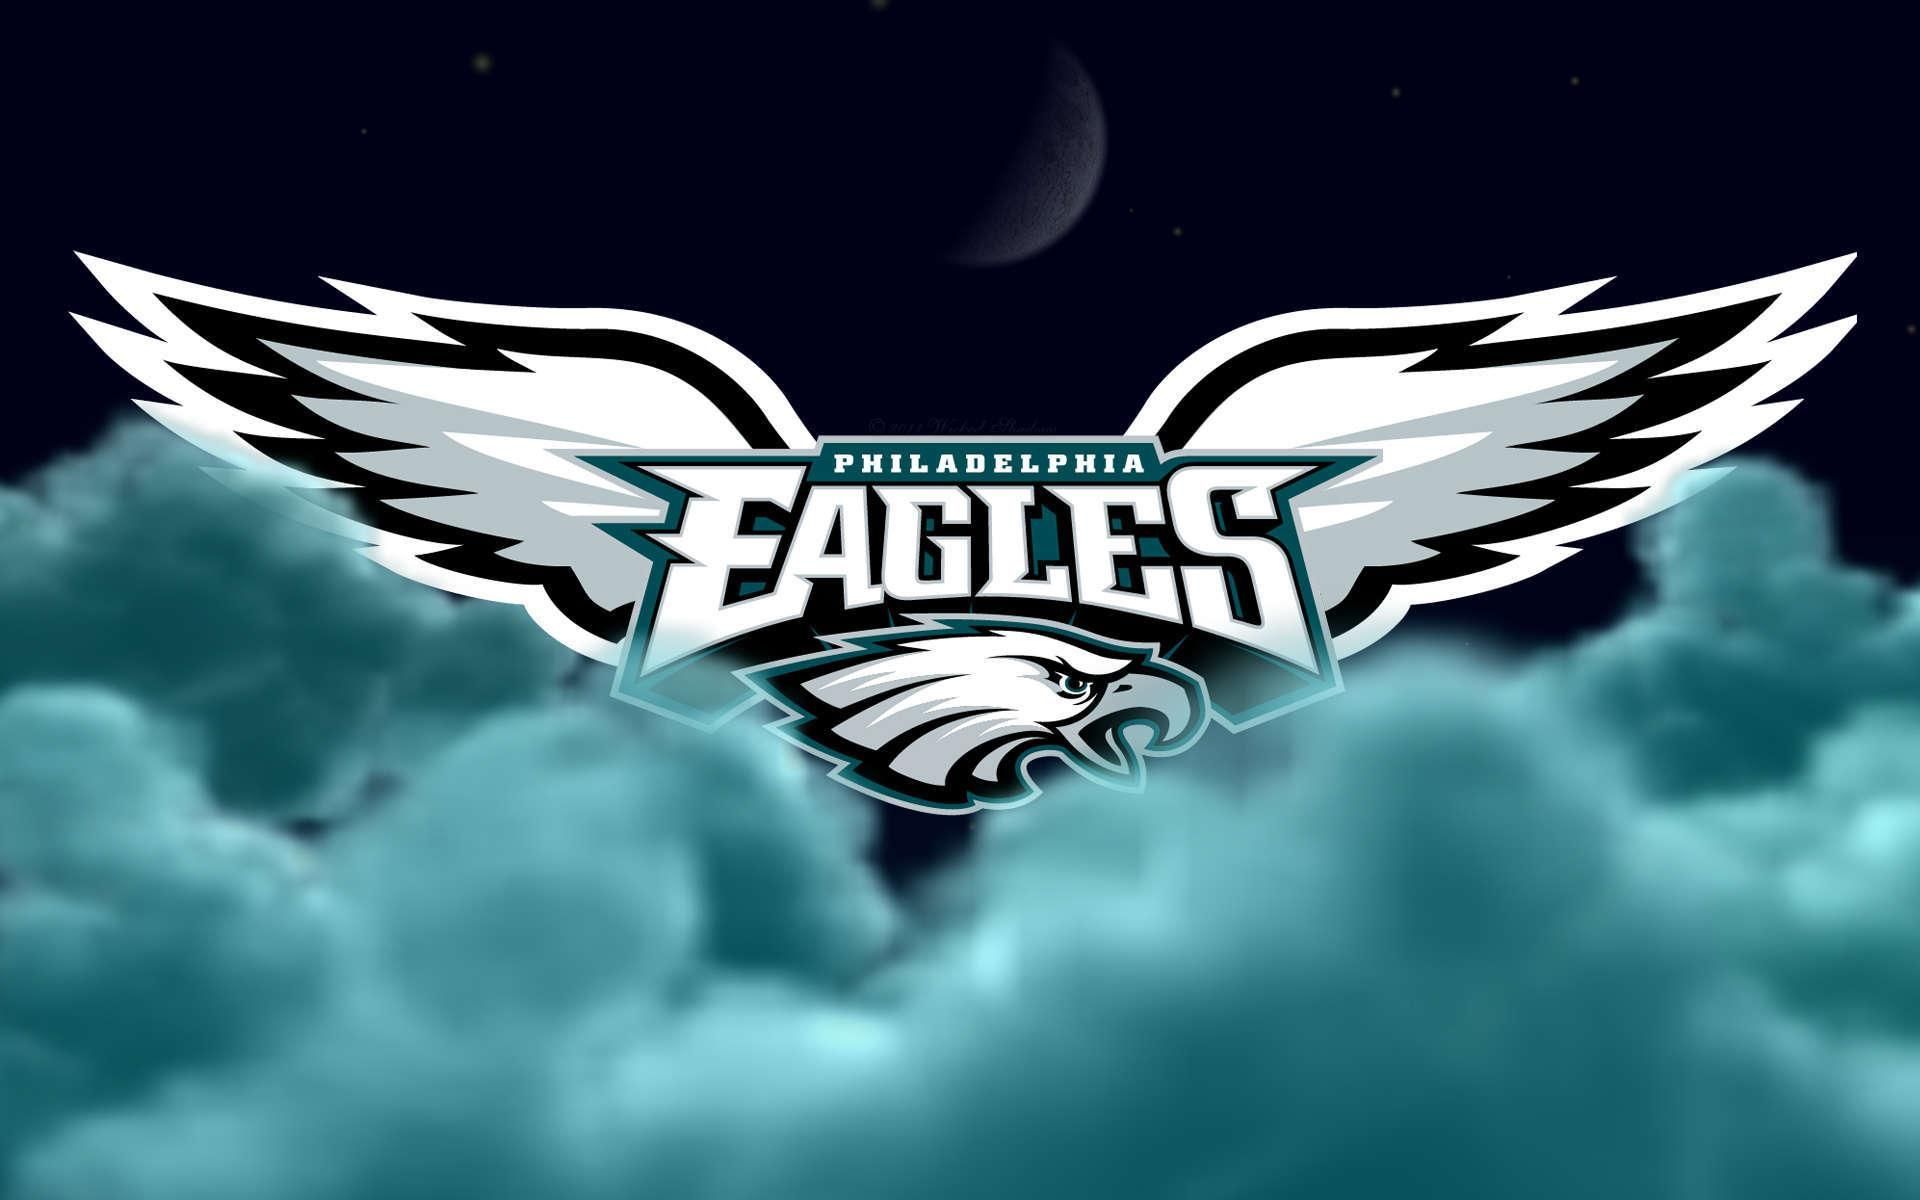 Philadelphia Eagles logo wallpaper. Philadelphia eagles wallpaper, Eagles vs, Philadelphia eagles